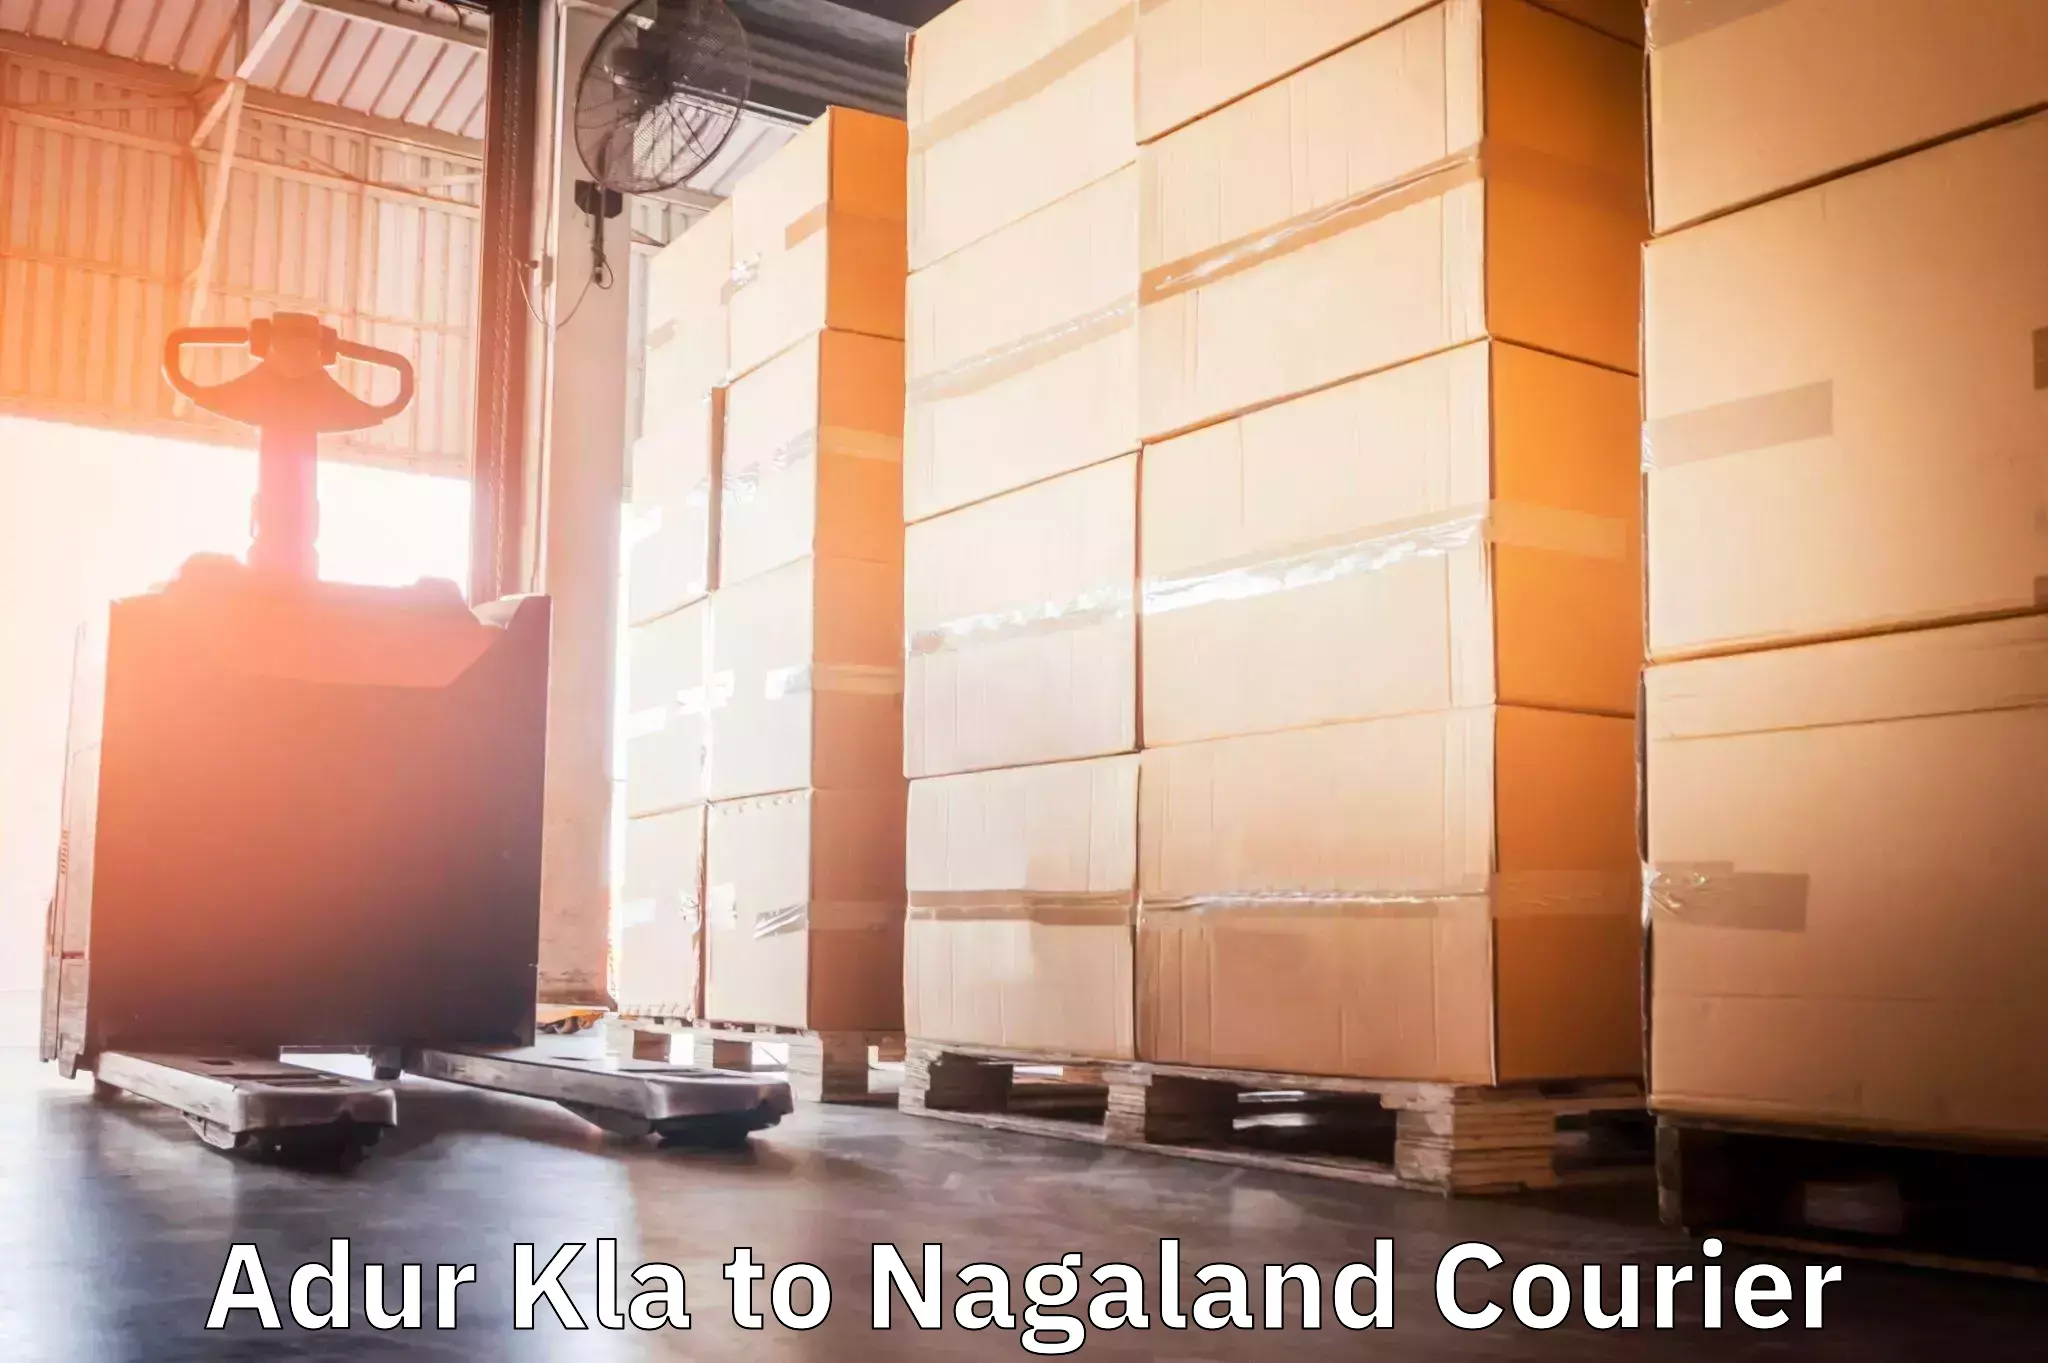 Courier service comparison Adur Kla to NIT Nagaland